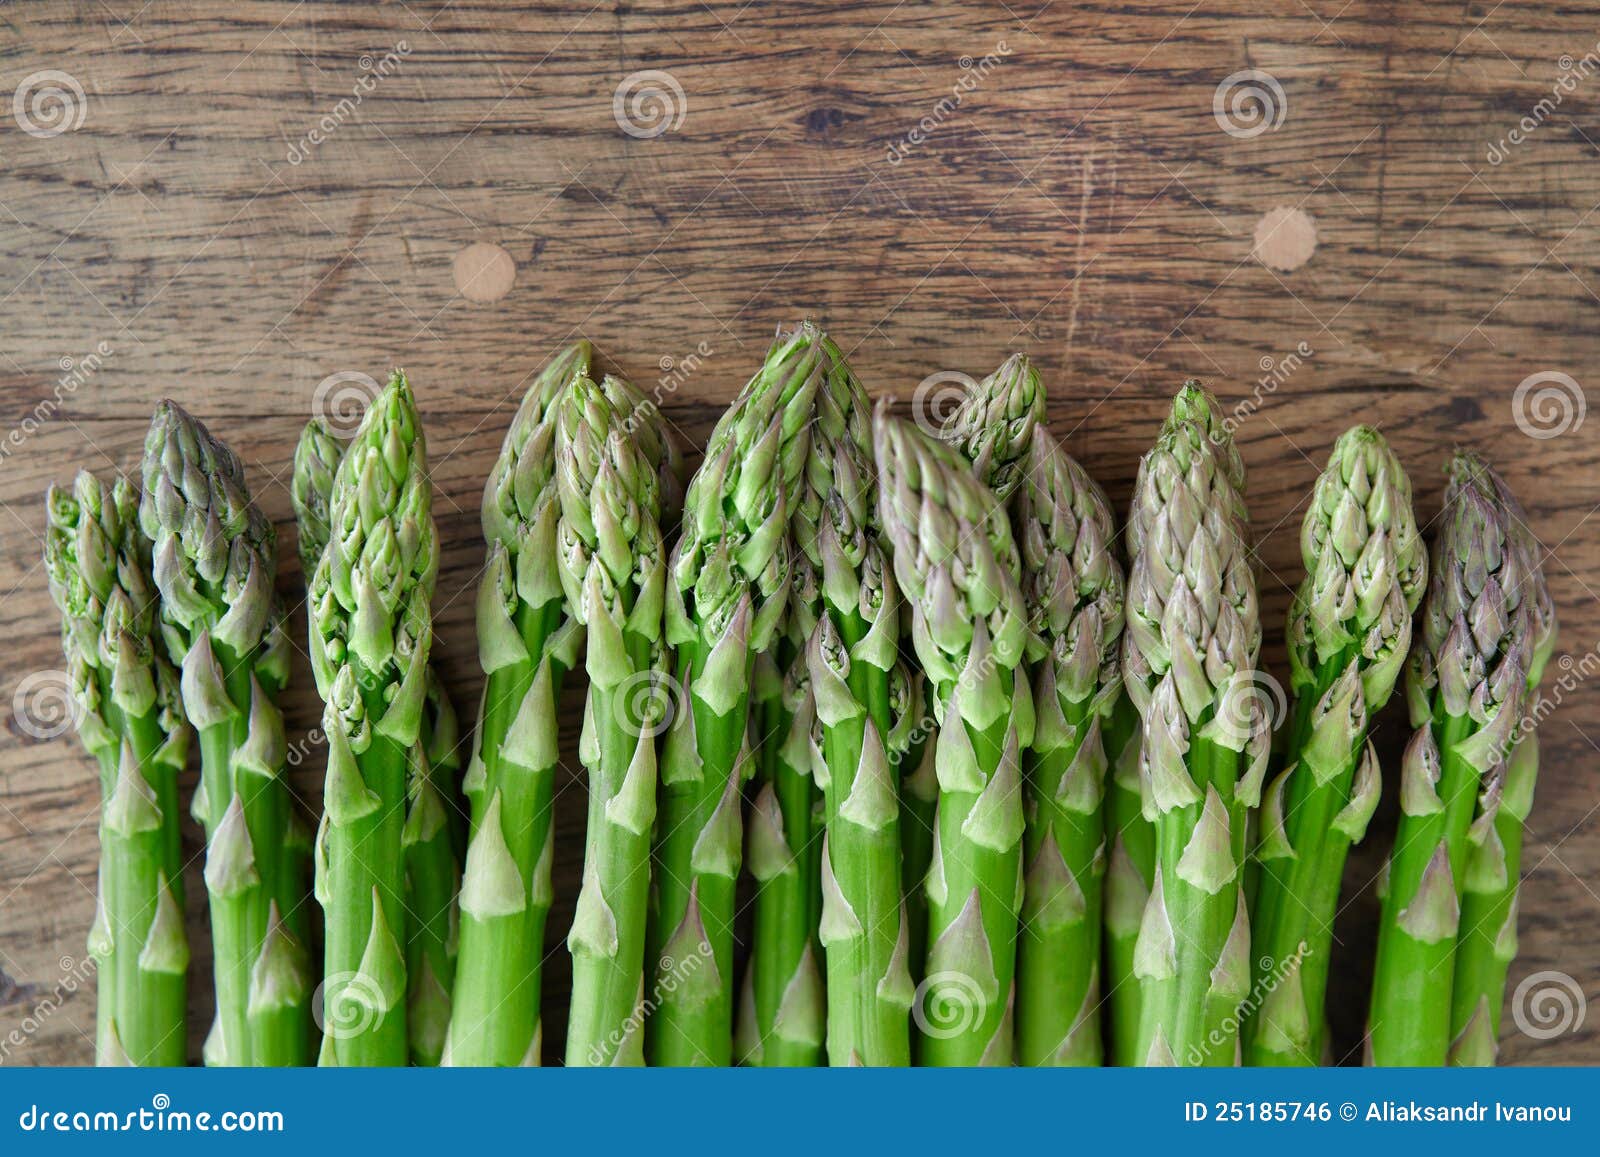 green asparagus.